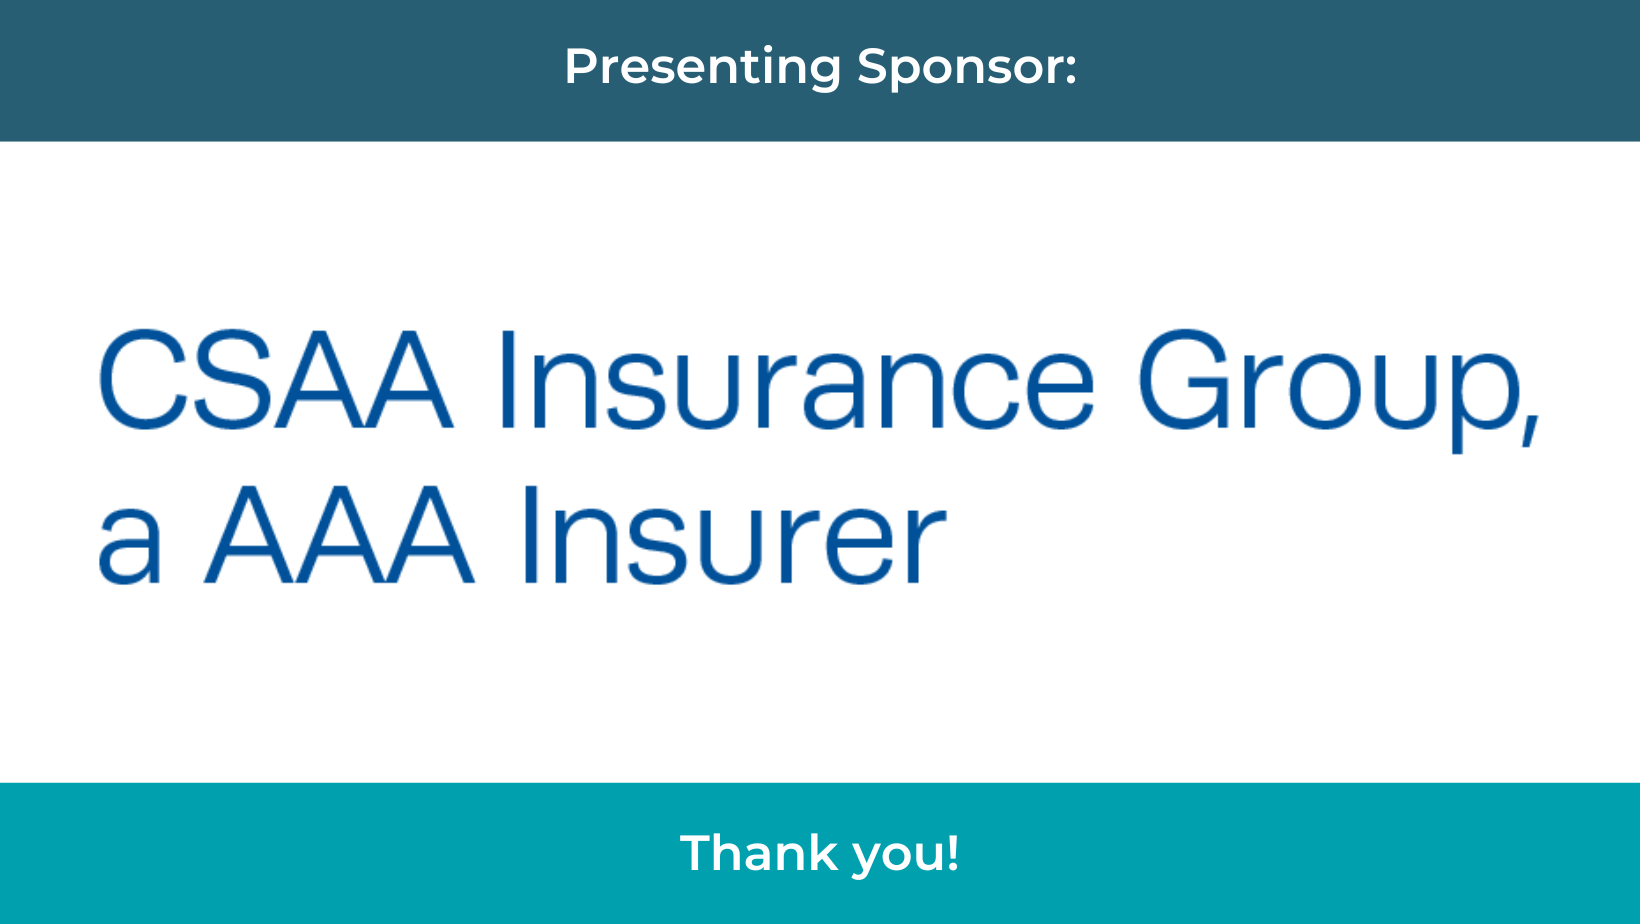 CSAA Insurance Group, a AAA Insurer